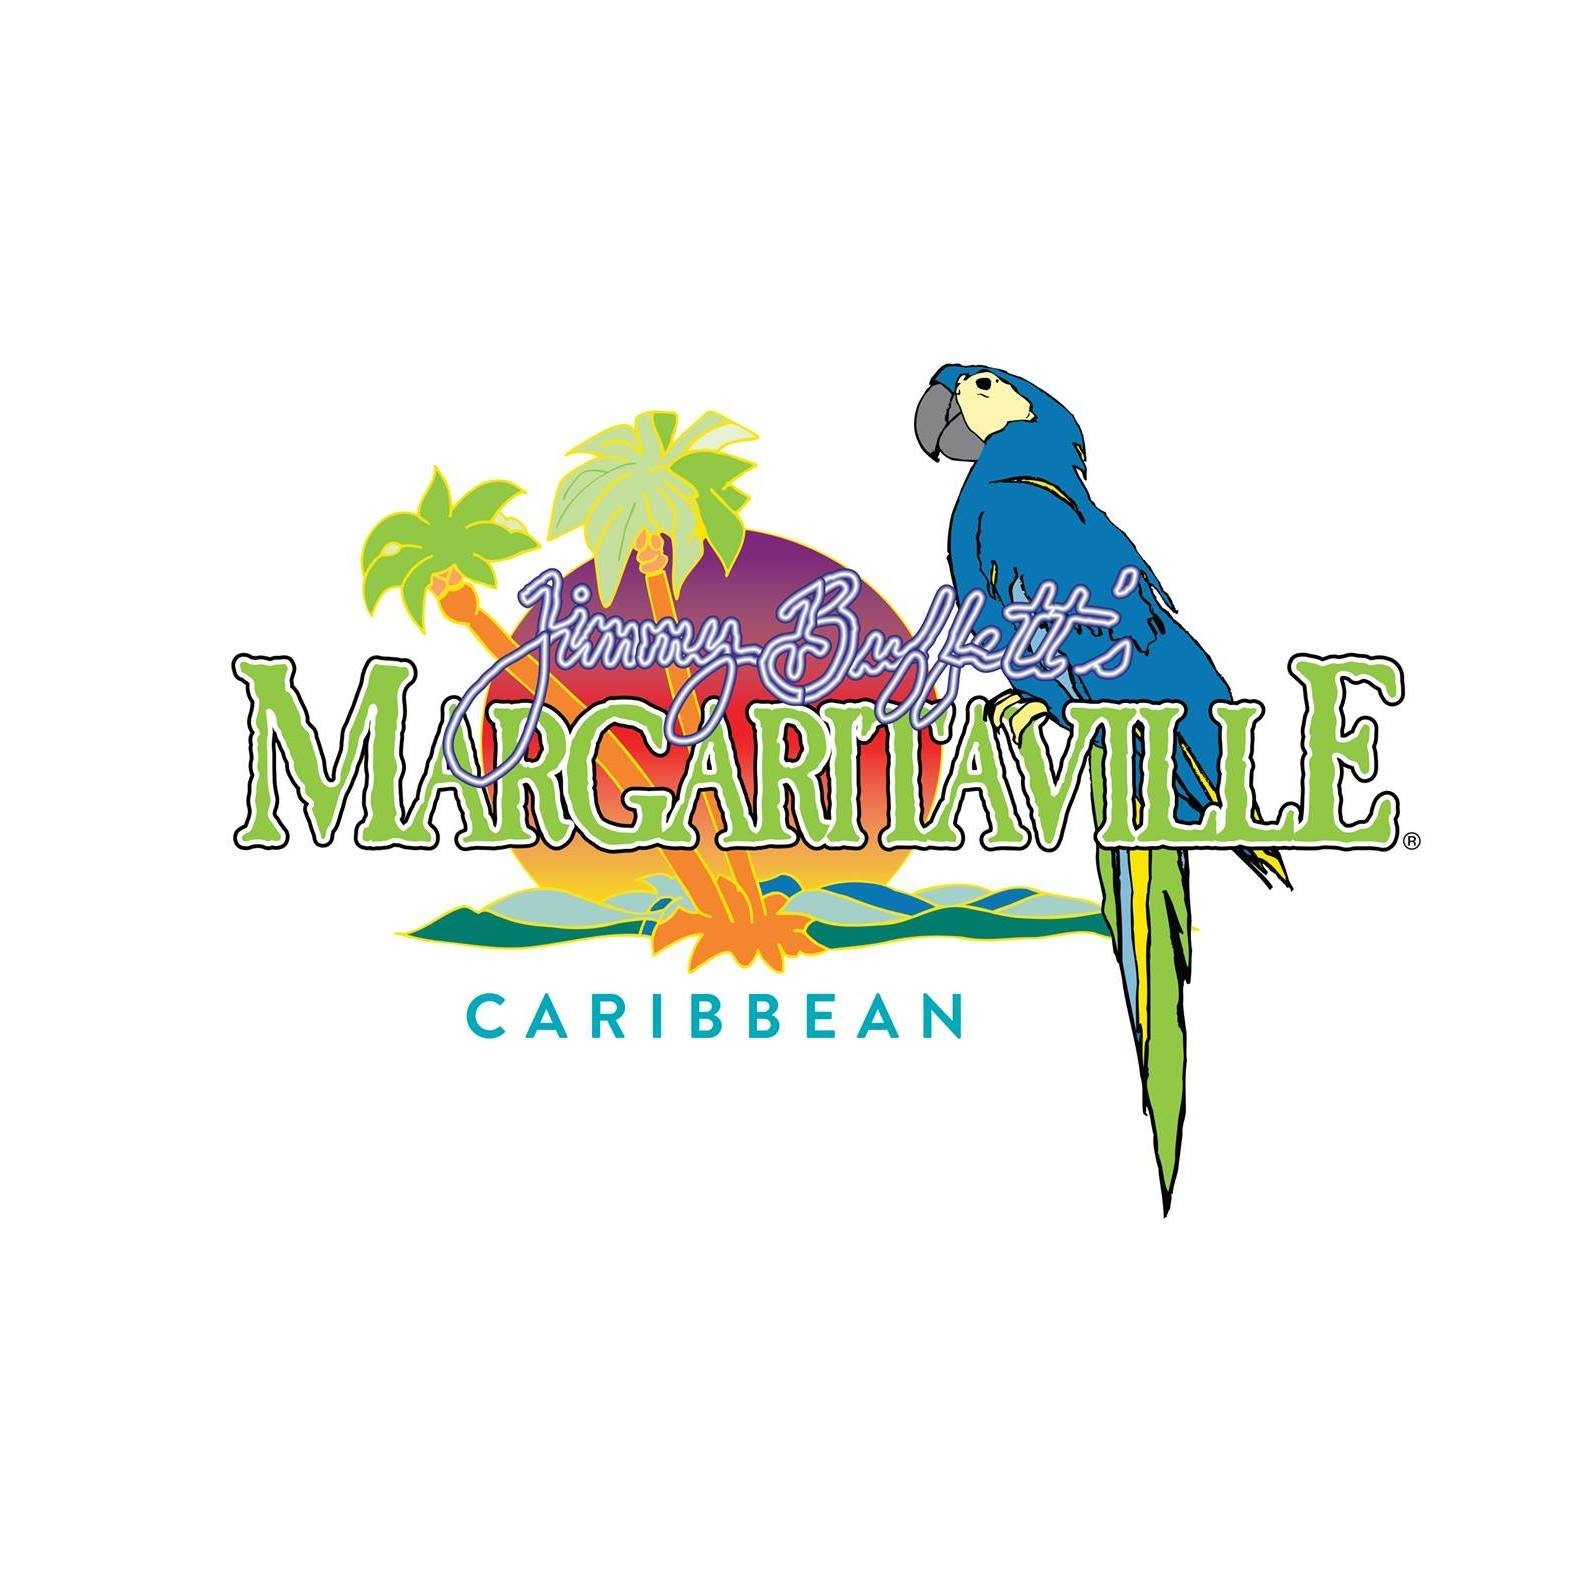 Margaritaville Launches